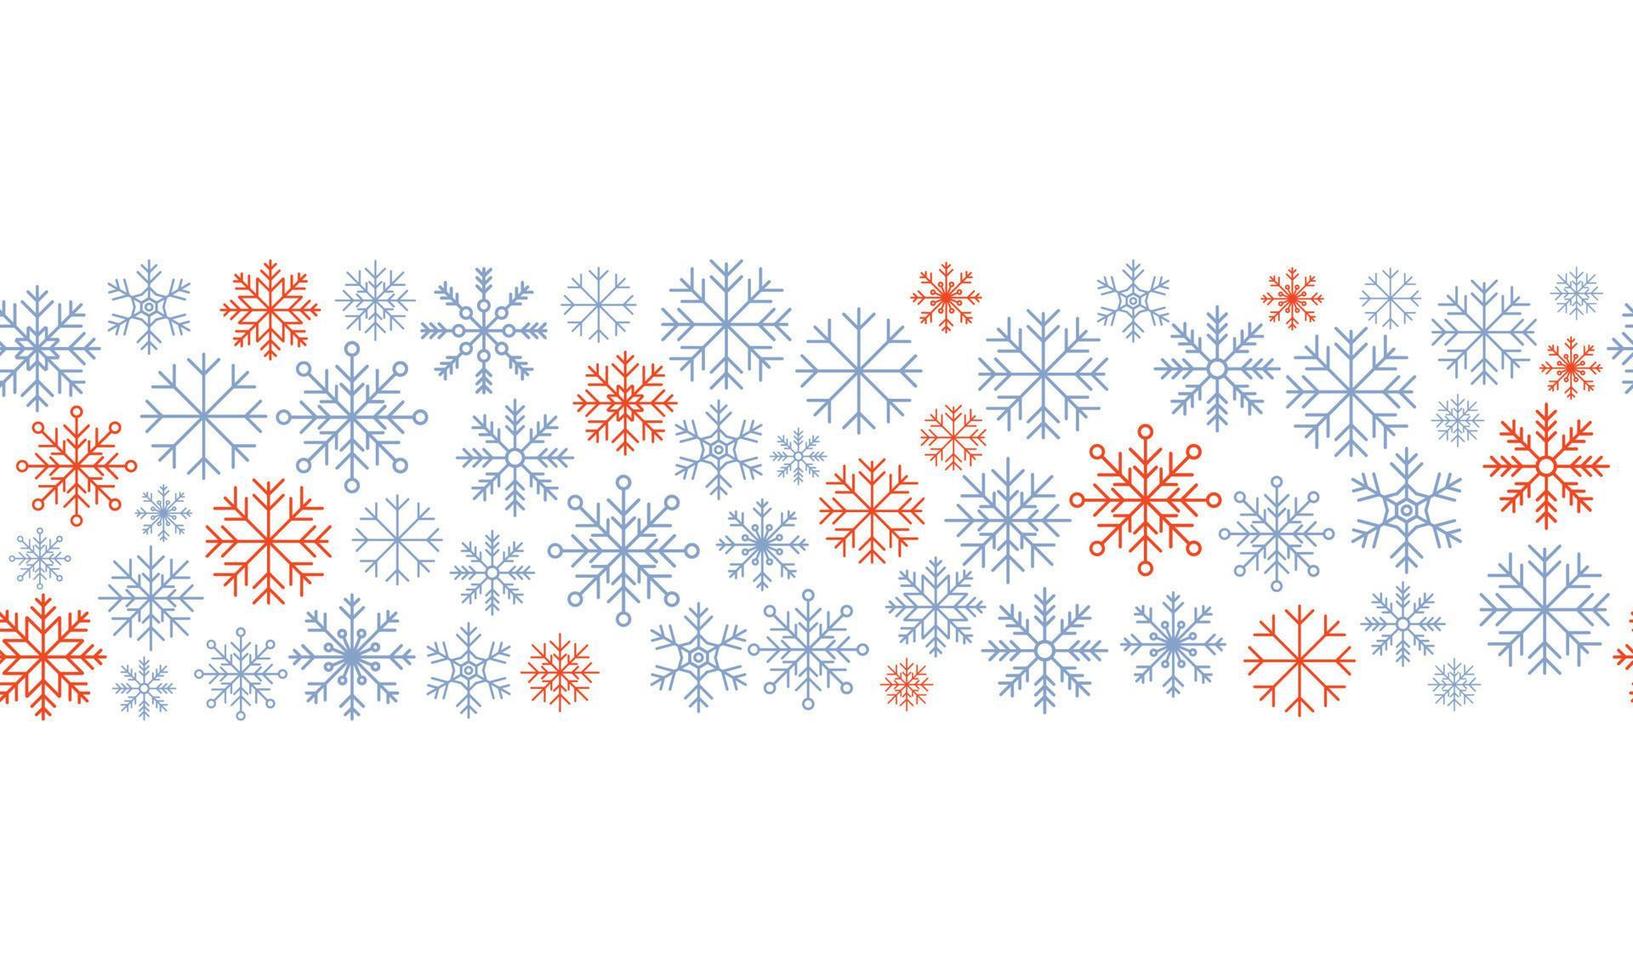 sneeuwvlok naadloos grens. sneeuwvlokken naadloos patroon. sneeuwval herhaling achtergrond. winter vakantie thema. naadloos achtergrond met sneeuwvlokken. vector illustratie